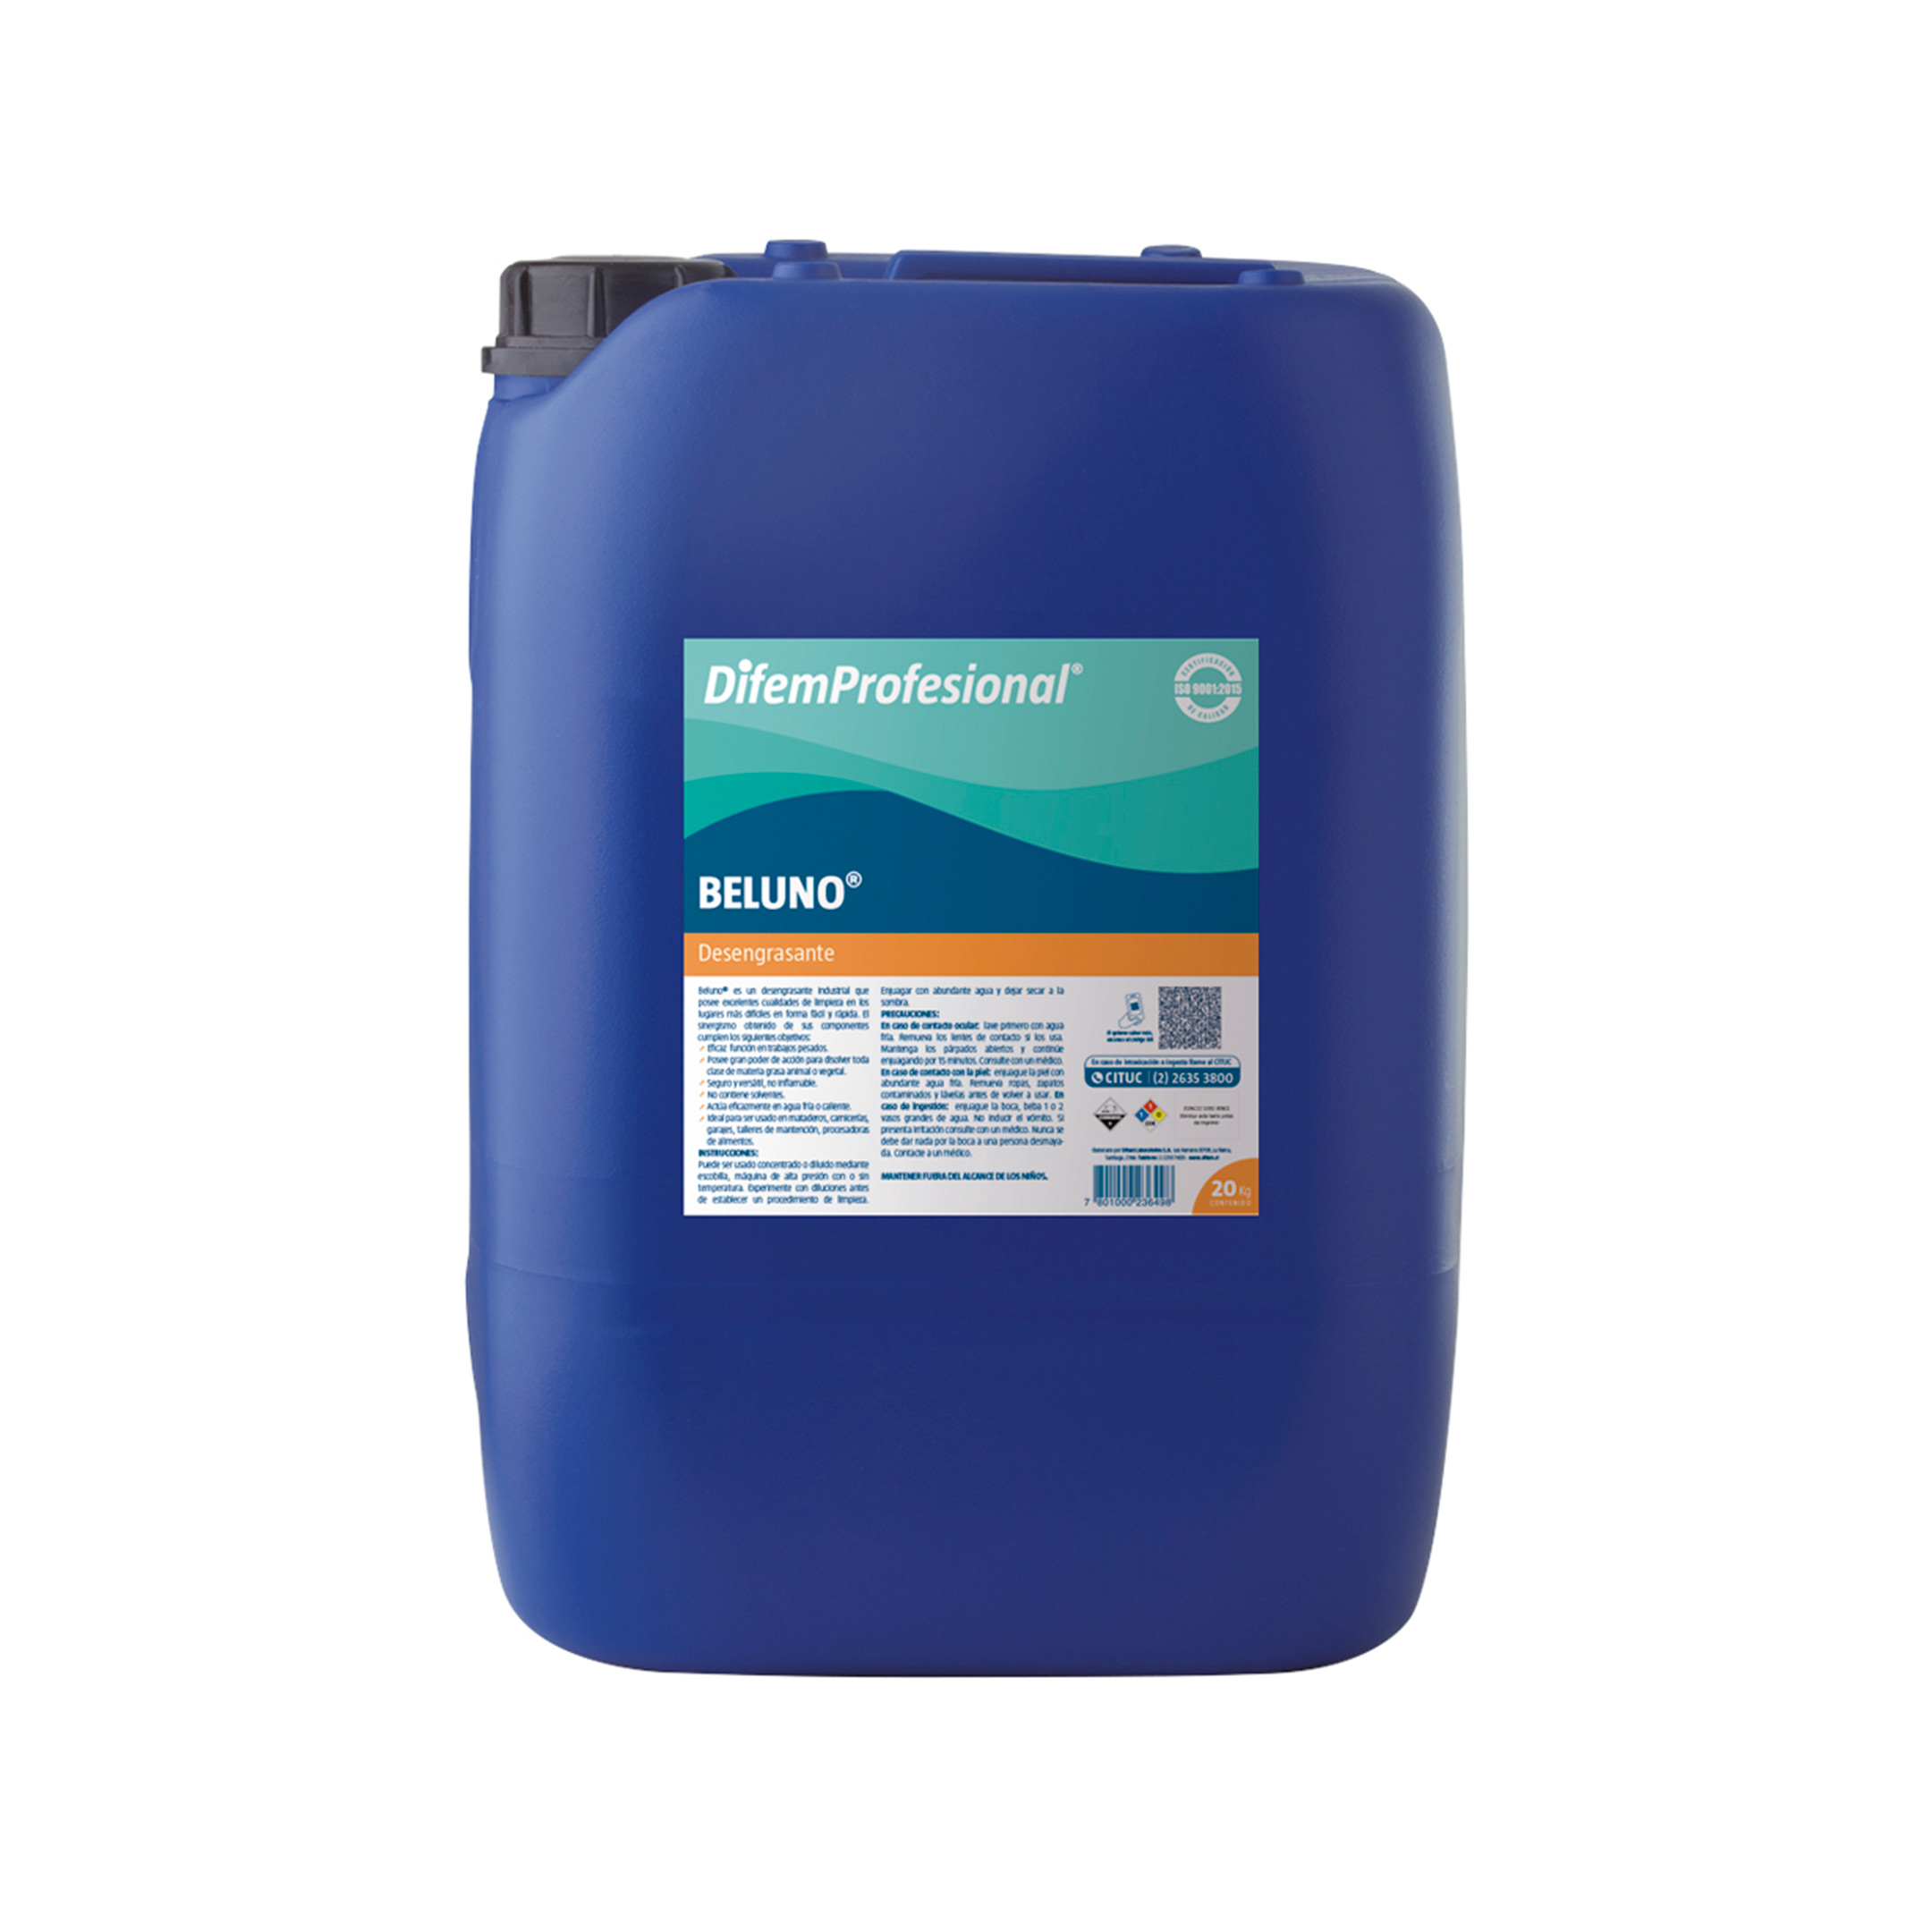 Es un detergente líquido alcalino, en base a soda cáustica para sistemas de limpieza CIP, maquinaria o equipos. No contiene solventes.